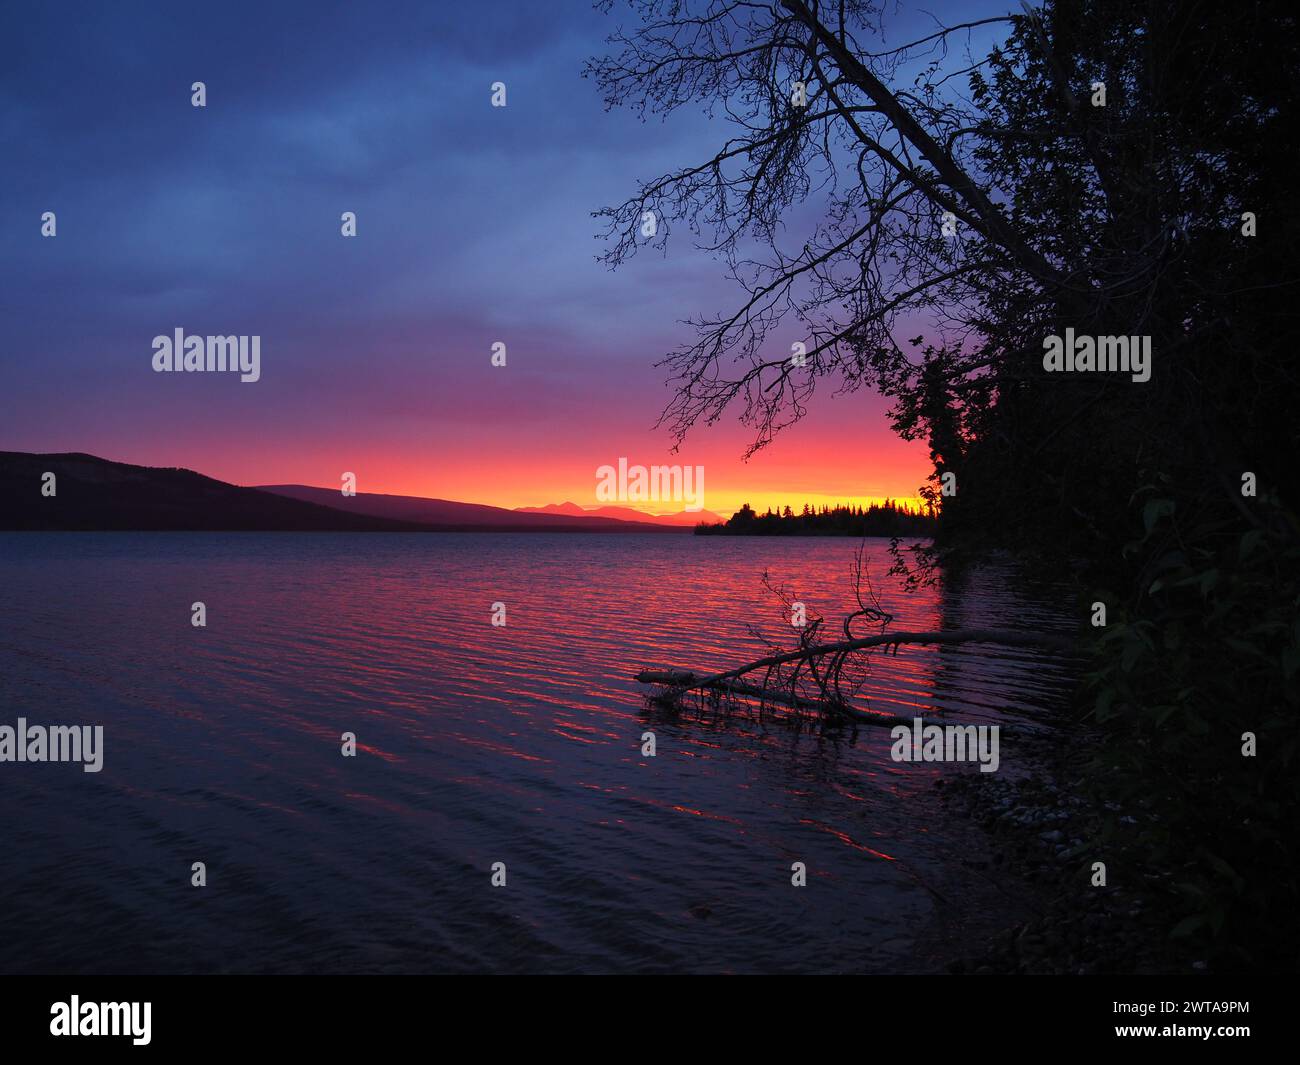 Am Little Atlin Lake, Yukon, Kanada, erfüllt der Sonnenuntergang den Himmel mit Orangen und Purpur, während die Bäume im Vordergrund Silhouetten zeigen Stockfoto